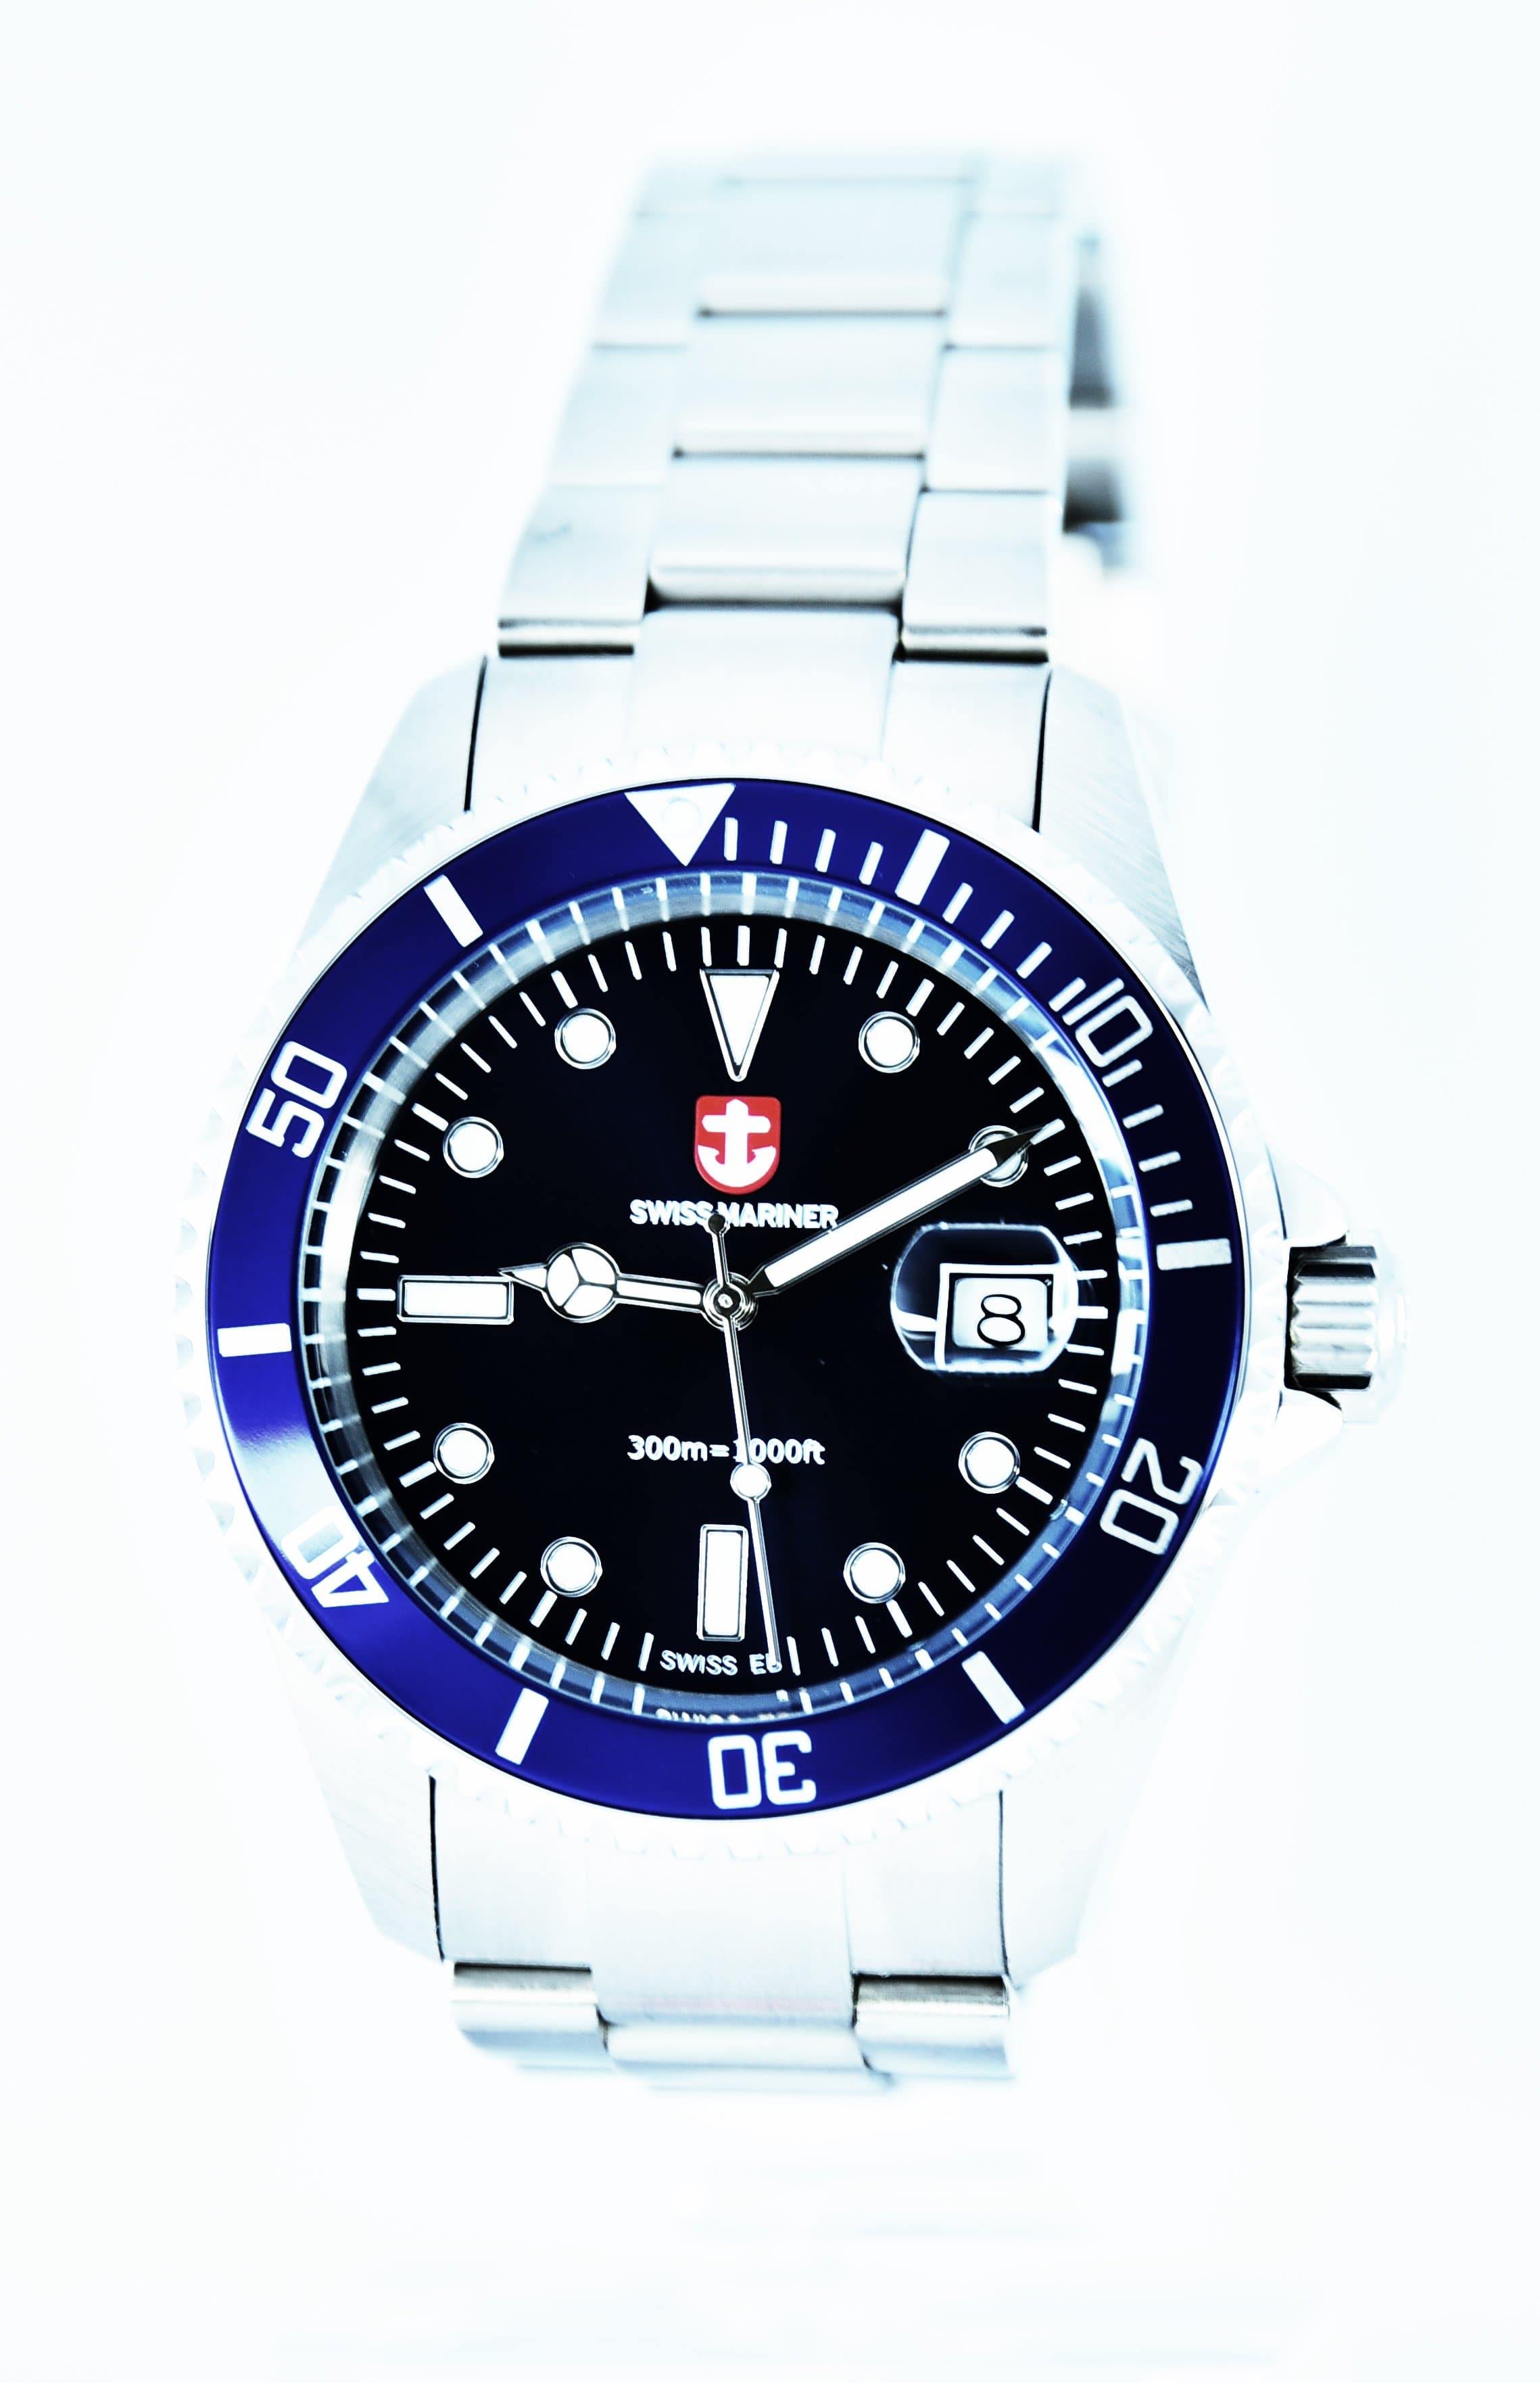 Swiss Mariner Marine Series Men's Watch SG6086R09B-SSBUBK - Prestige